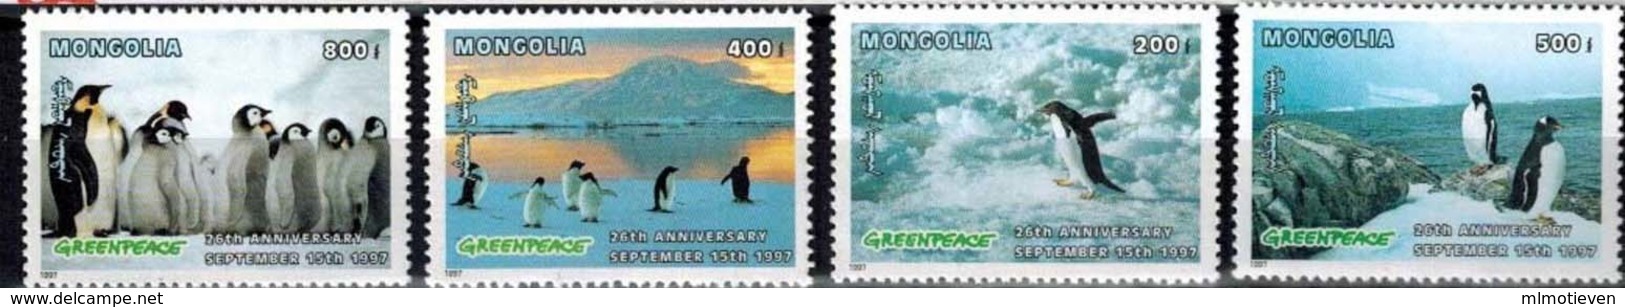 MDB-BK6-393-6 MINT ¤ MONGOLIA 1997 44w In Serie ¤ GREENPEACE  OISEAUX - BIRDS OF THE WORLD - PAJAROS - VOGELS - VÖGEL - - Pinguïns & Vetganzen